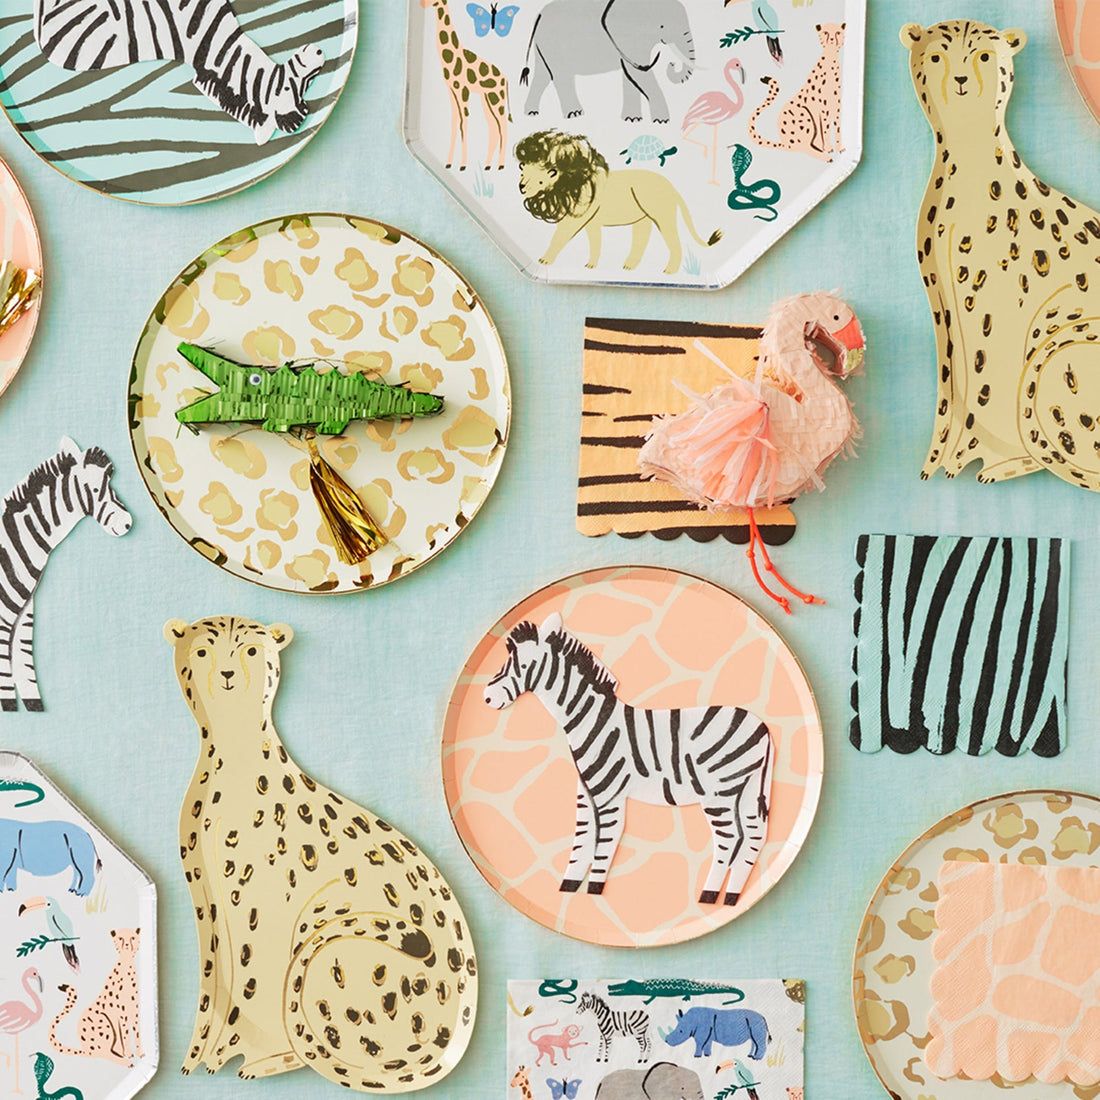 Four Safari Animal Print Paper Napkins with gold foil detail on a white background by Meri Meri.